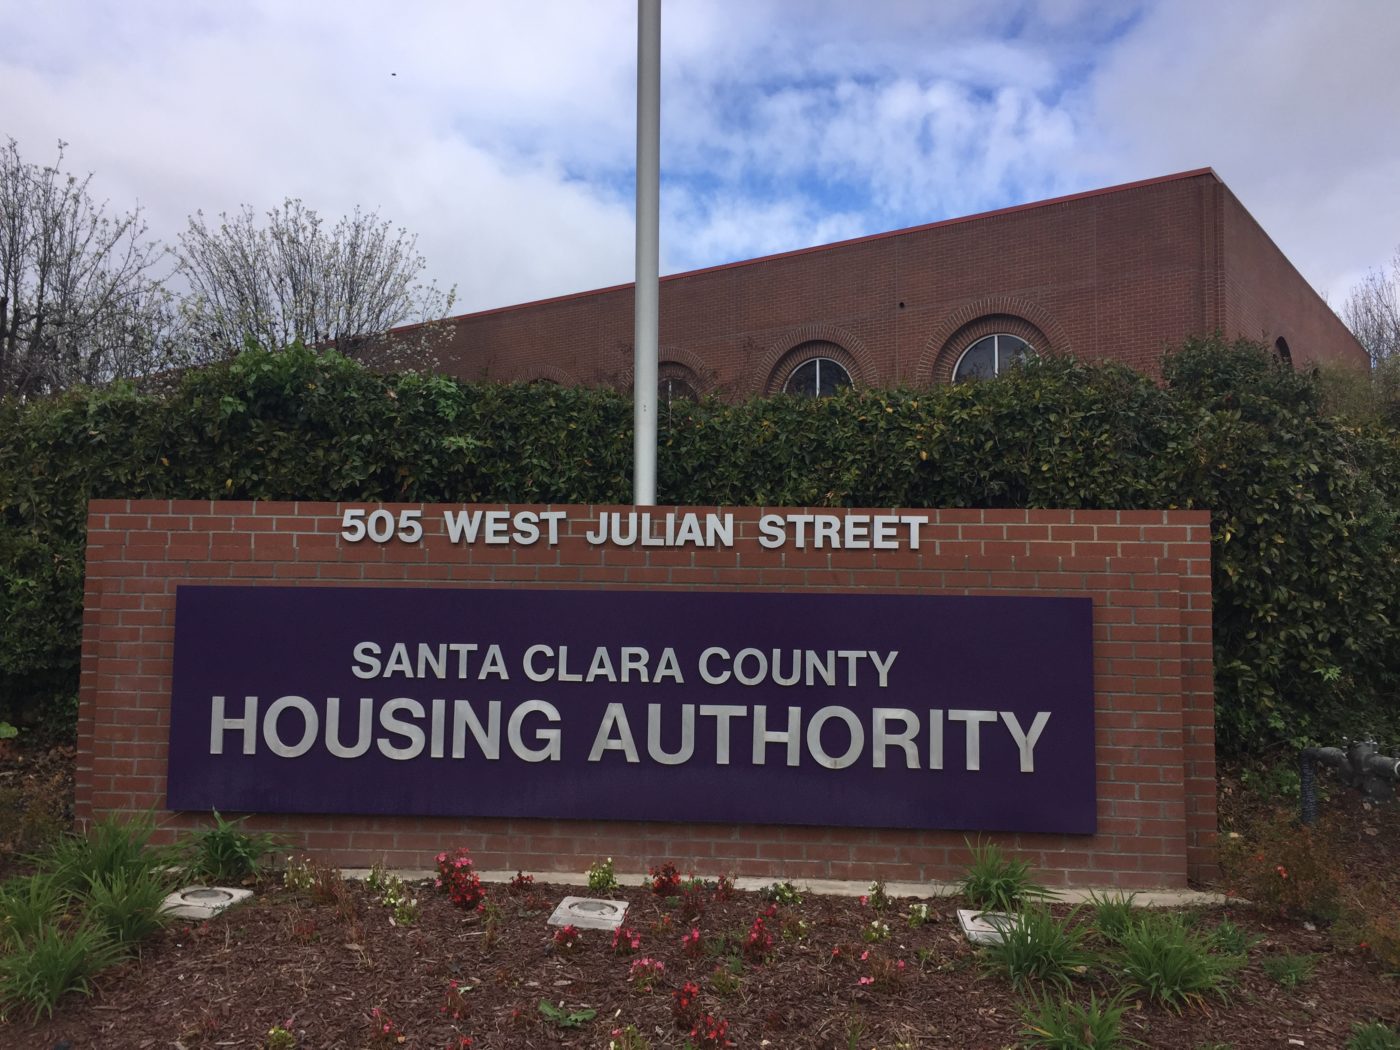 Santa Clara County Housing Authority